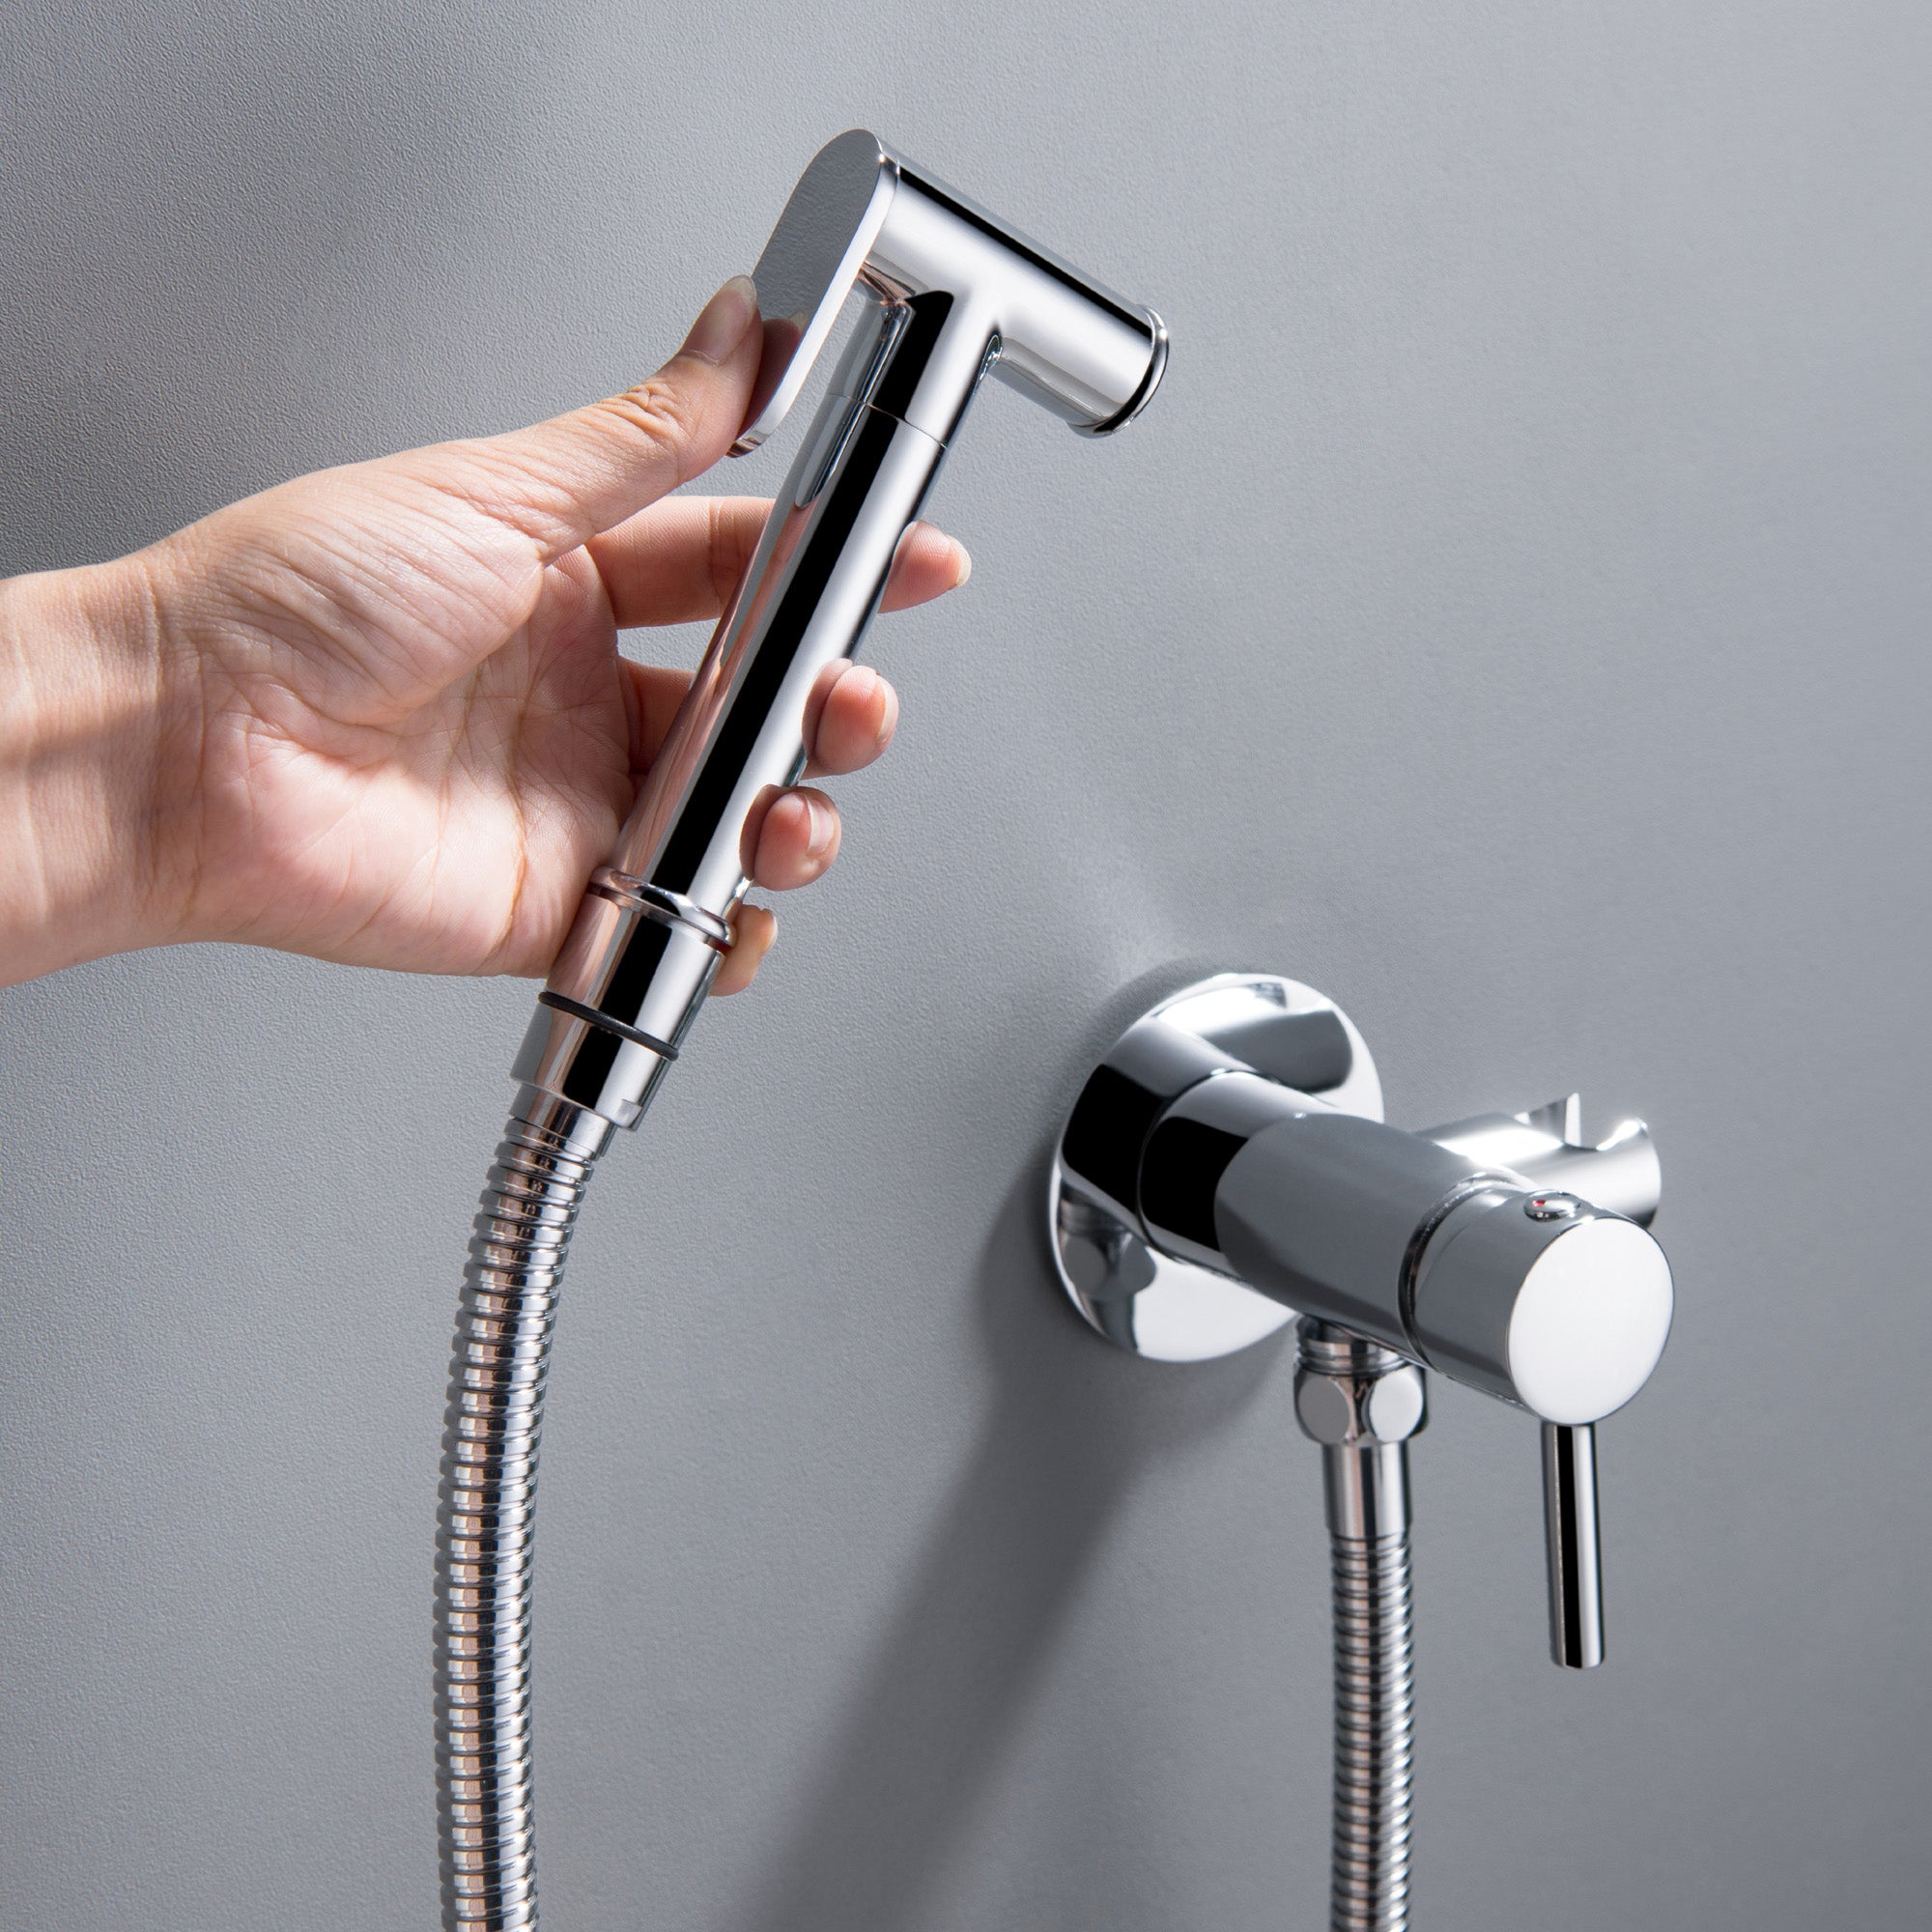 Handheld Bidet Toilet Sprayer for Bathing Showering and Feminine